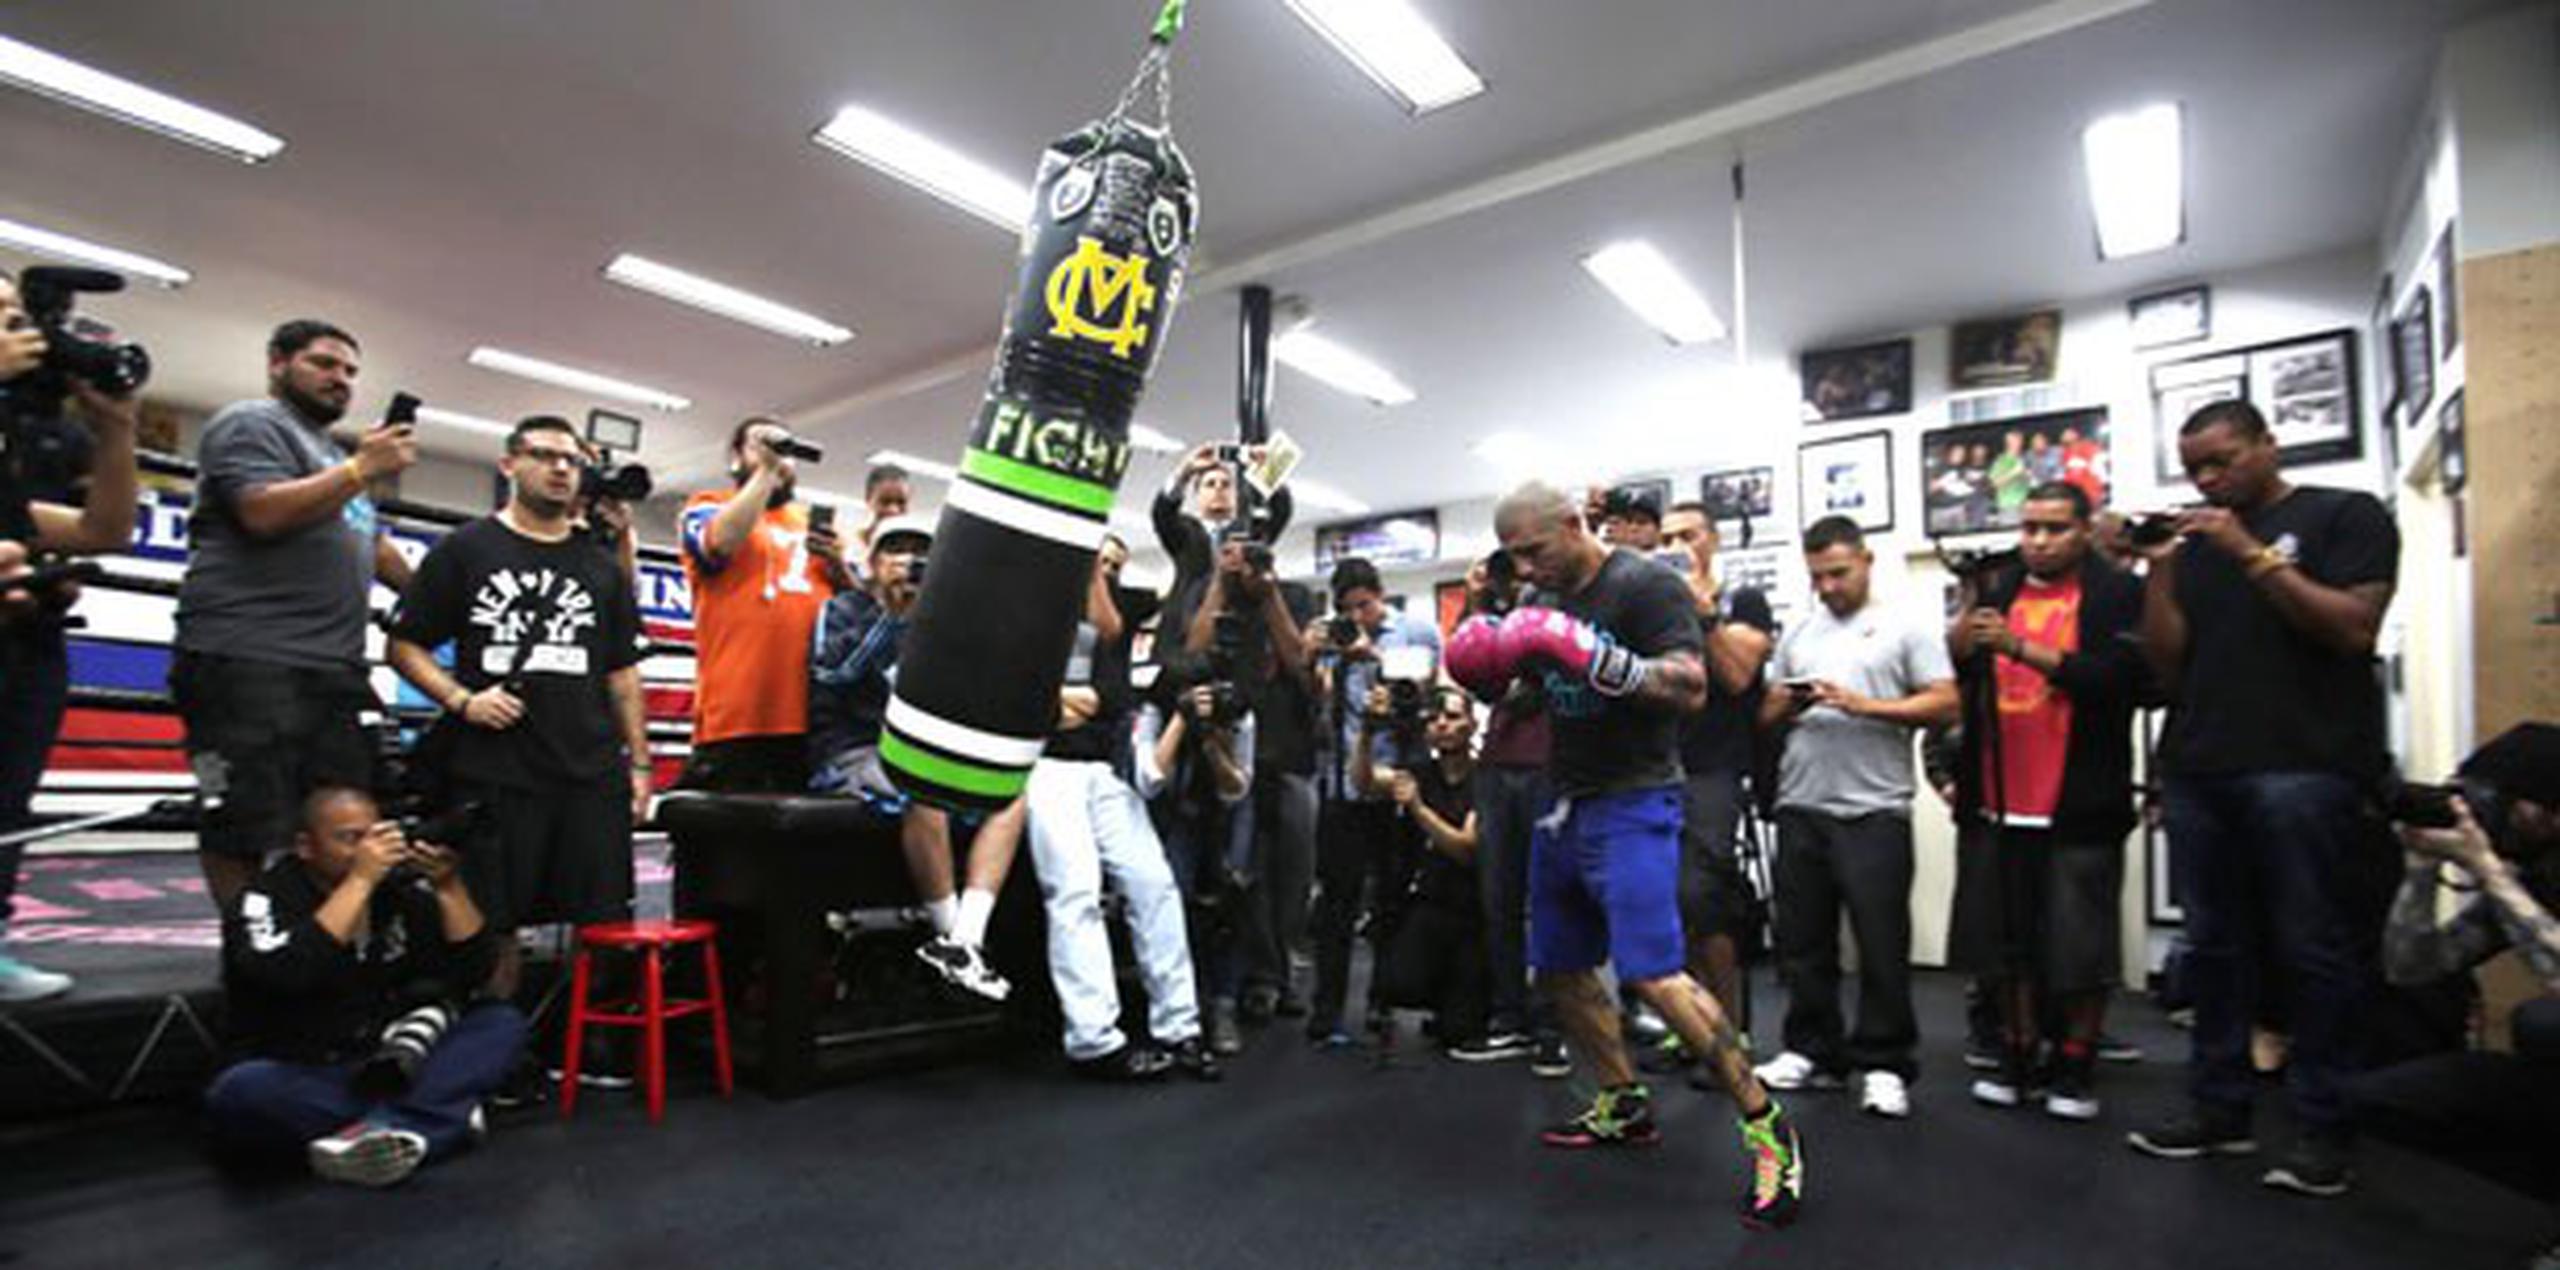 Miguel Cotto enfrenta a Daniel Geale en el Barclays Center en Brooklyn, Nueva York. (Miguel Cotto Promotions/Roc Nation Sports)